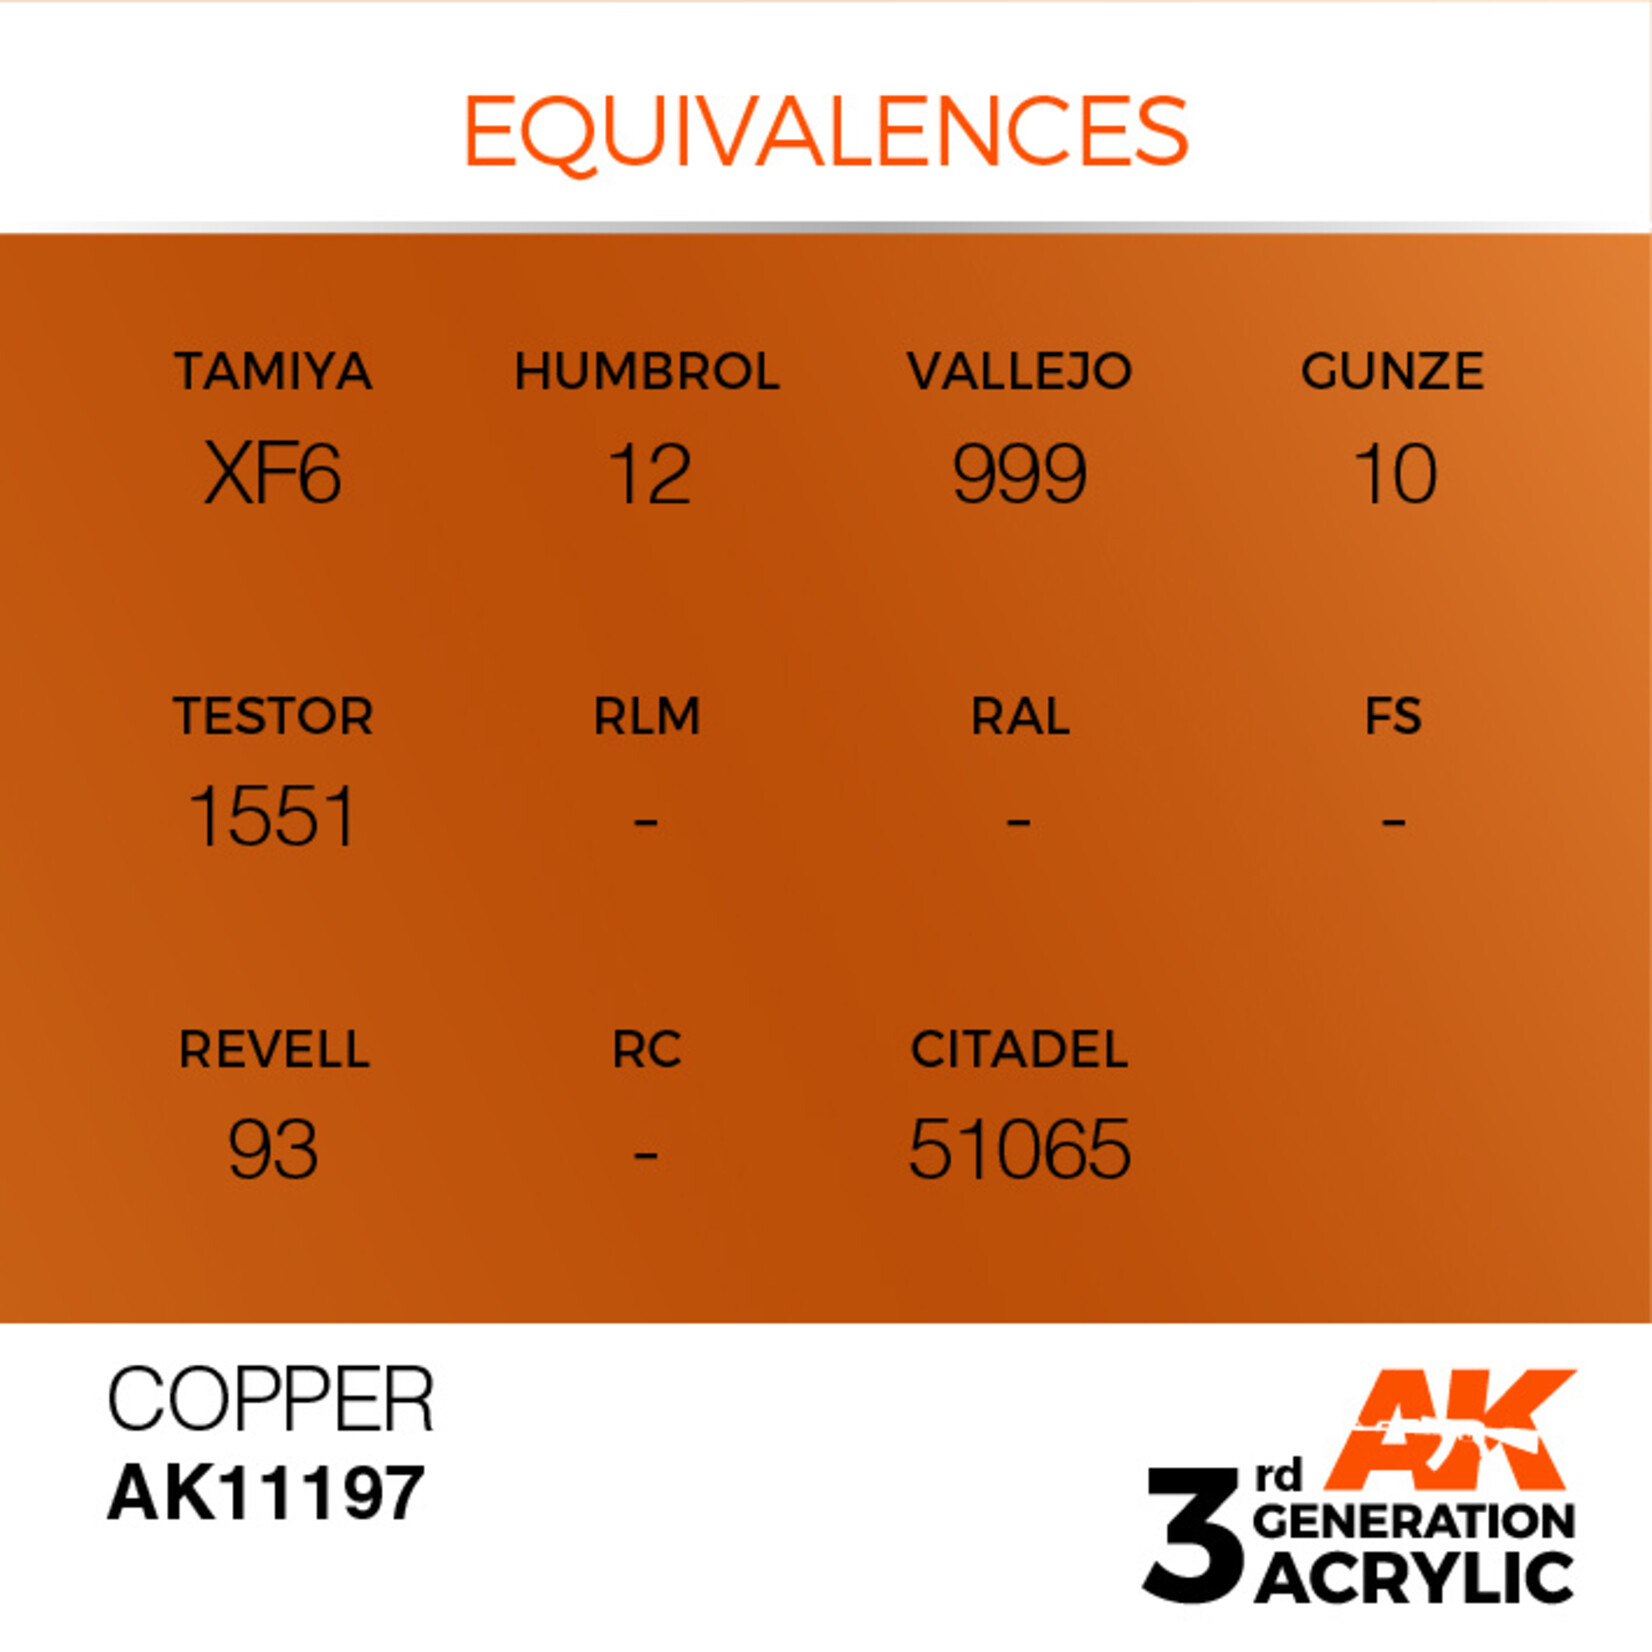 AK Interactive AK 3rd Gen Acrylics: Copper (17ml)